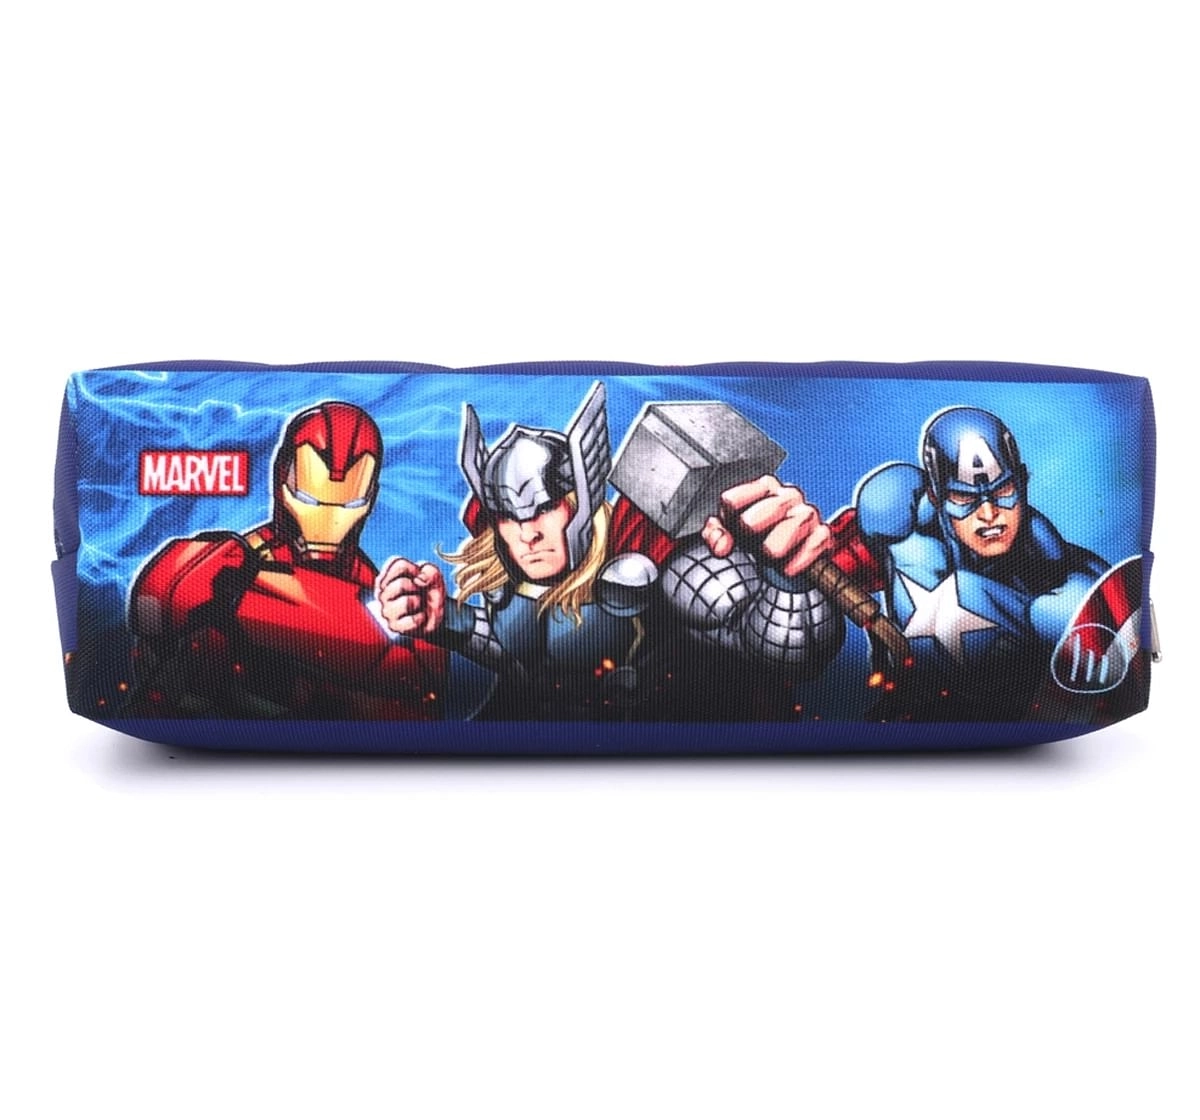 Marvel Avengers Assemble Cloth Pencil Box Pencil Case - Blue